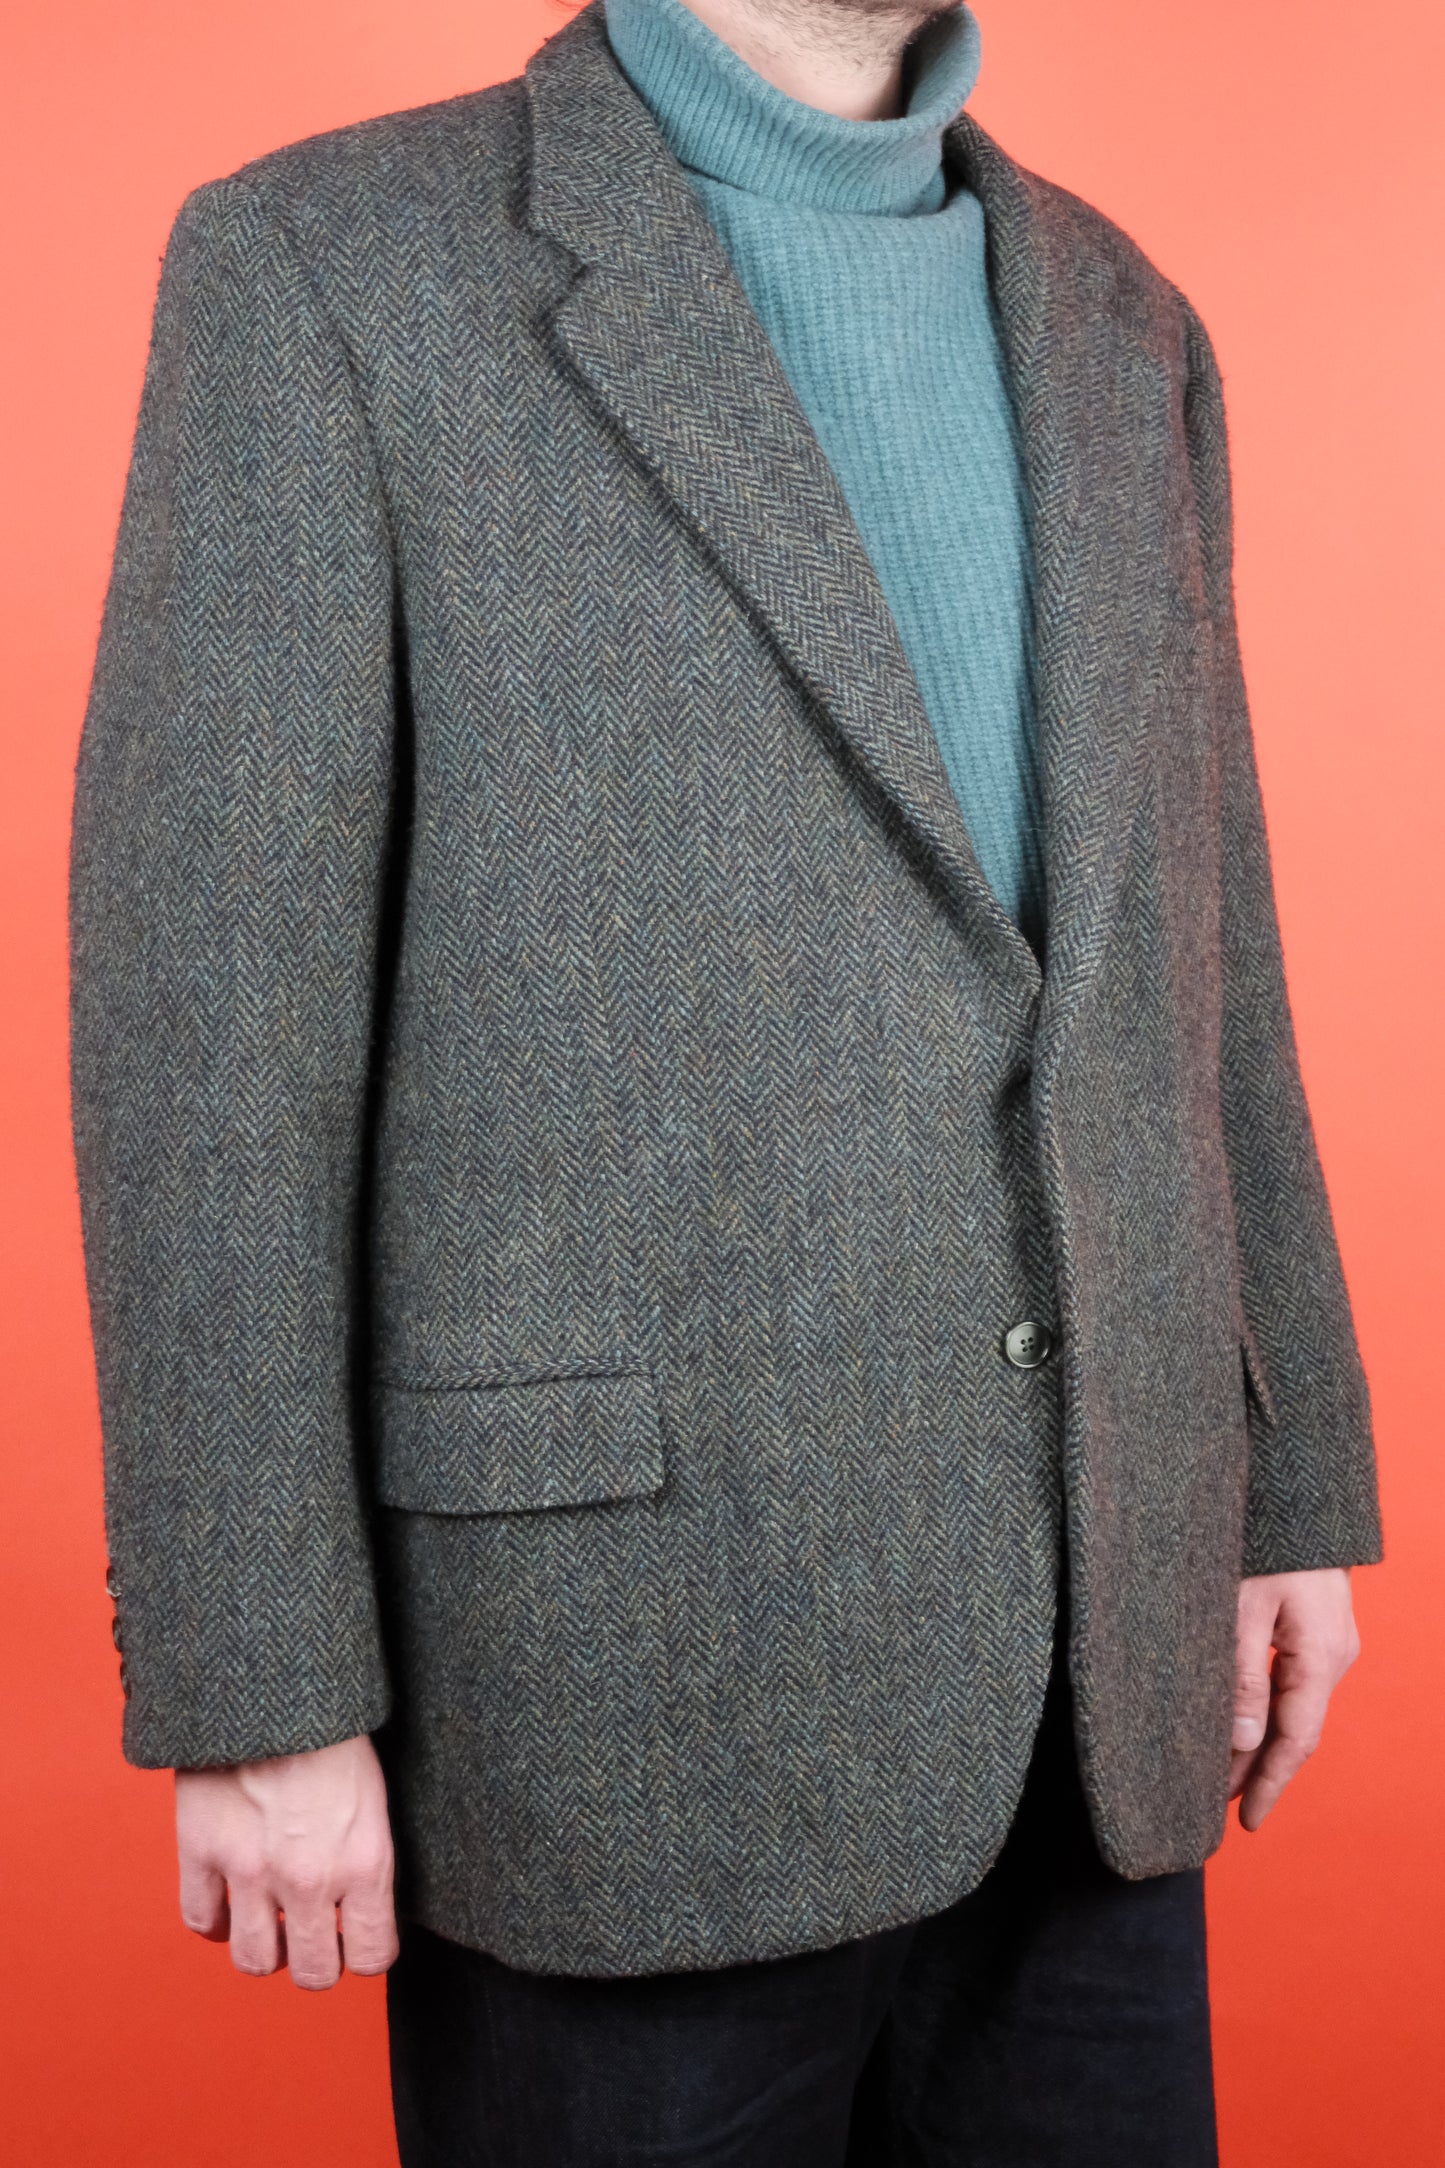 Herringbone Harris Tweed Suit Jacket 'L' - vintage clothing clochard92.com